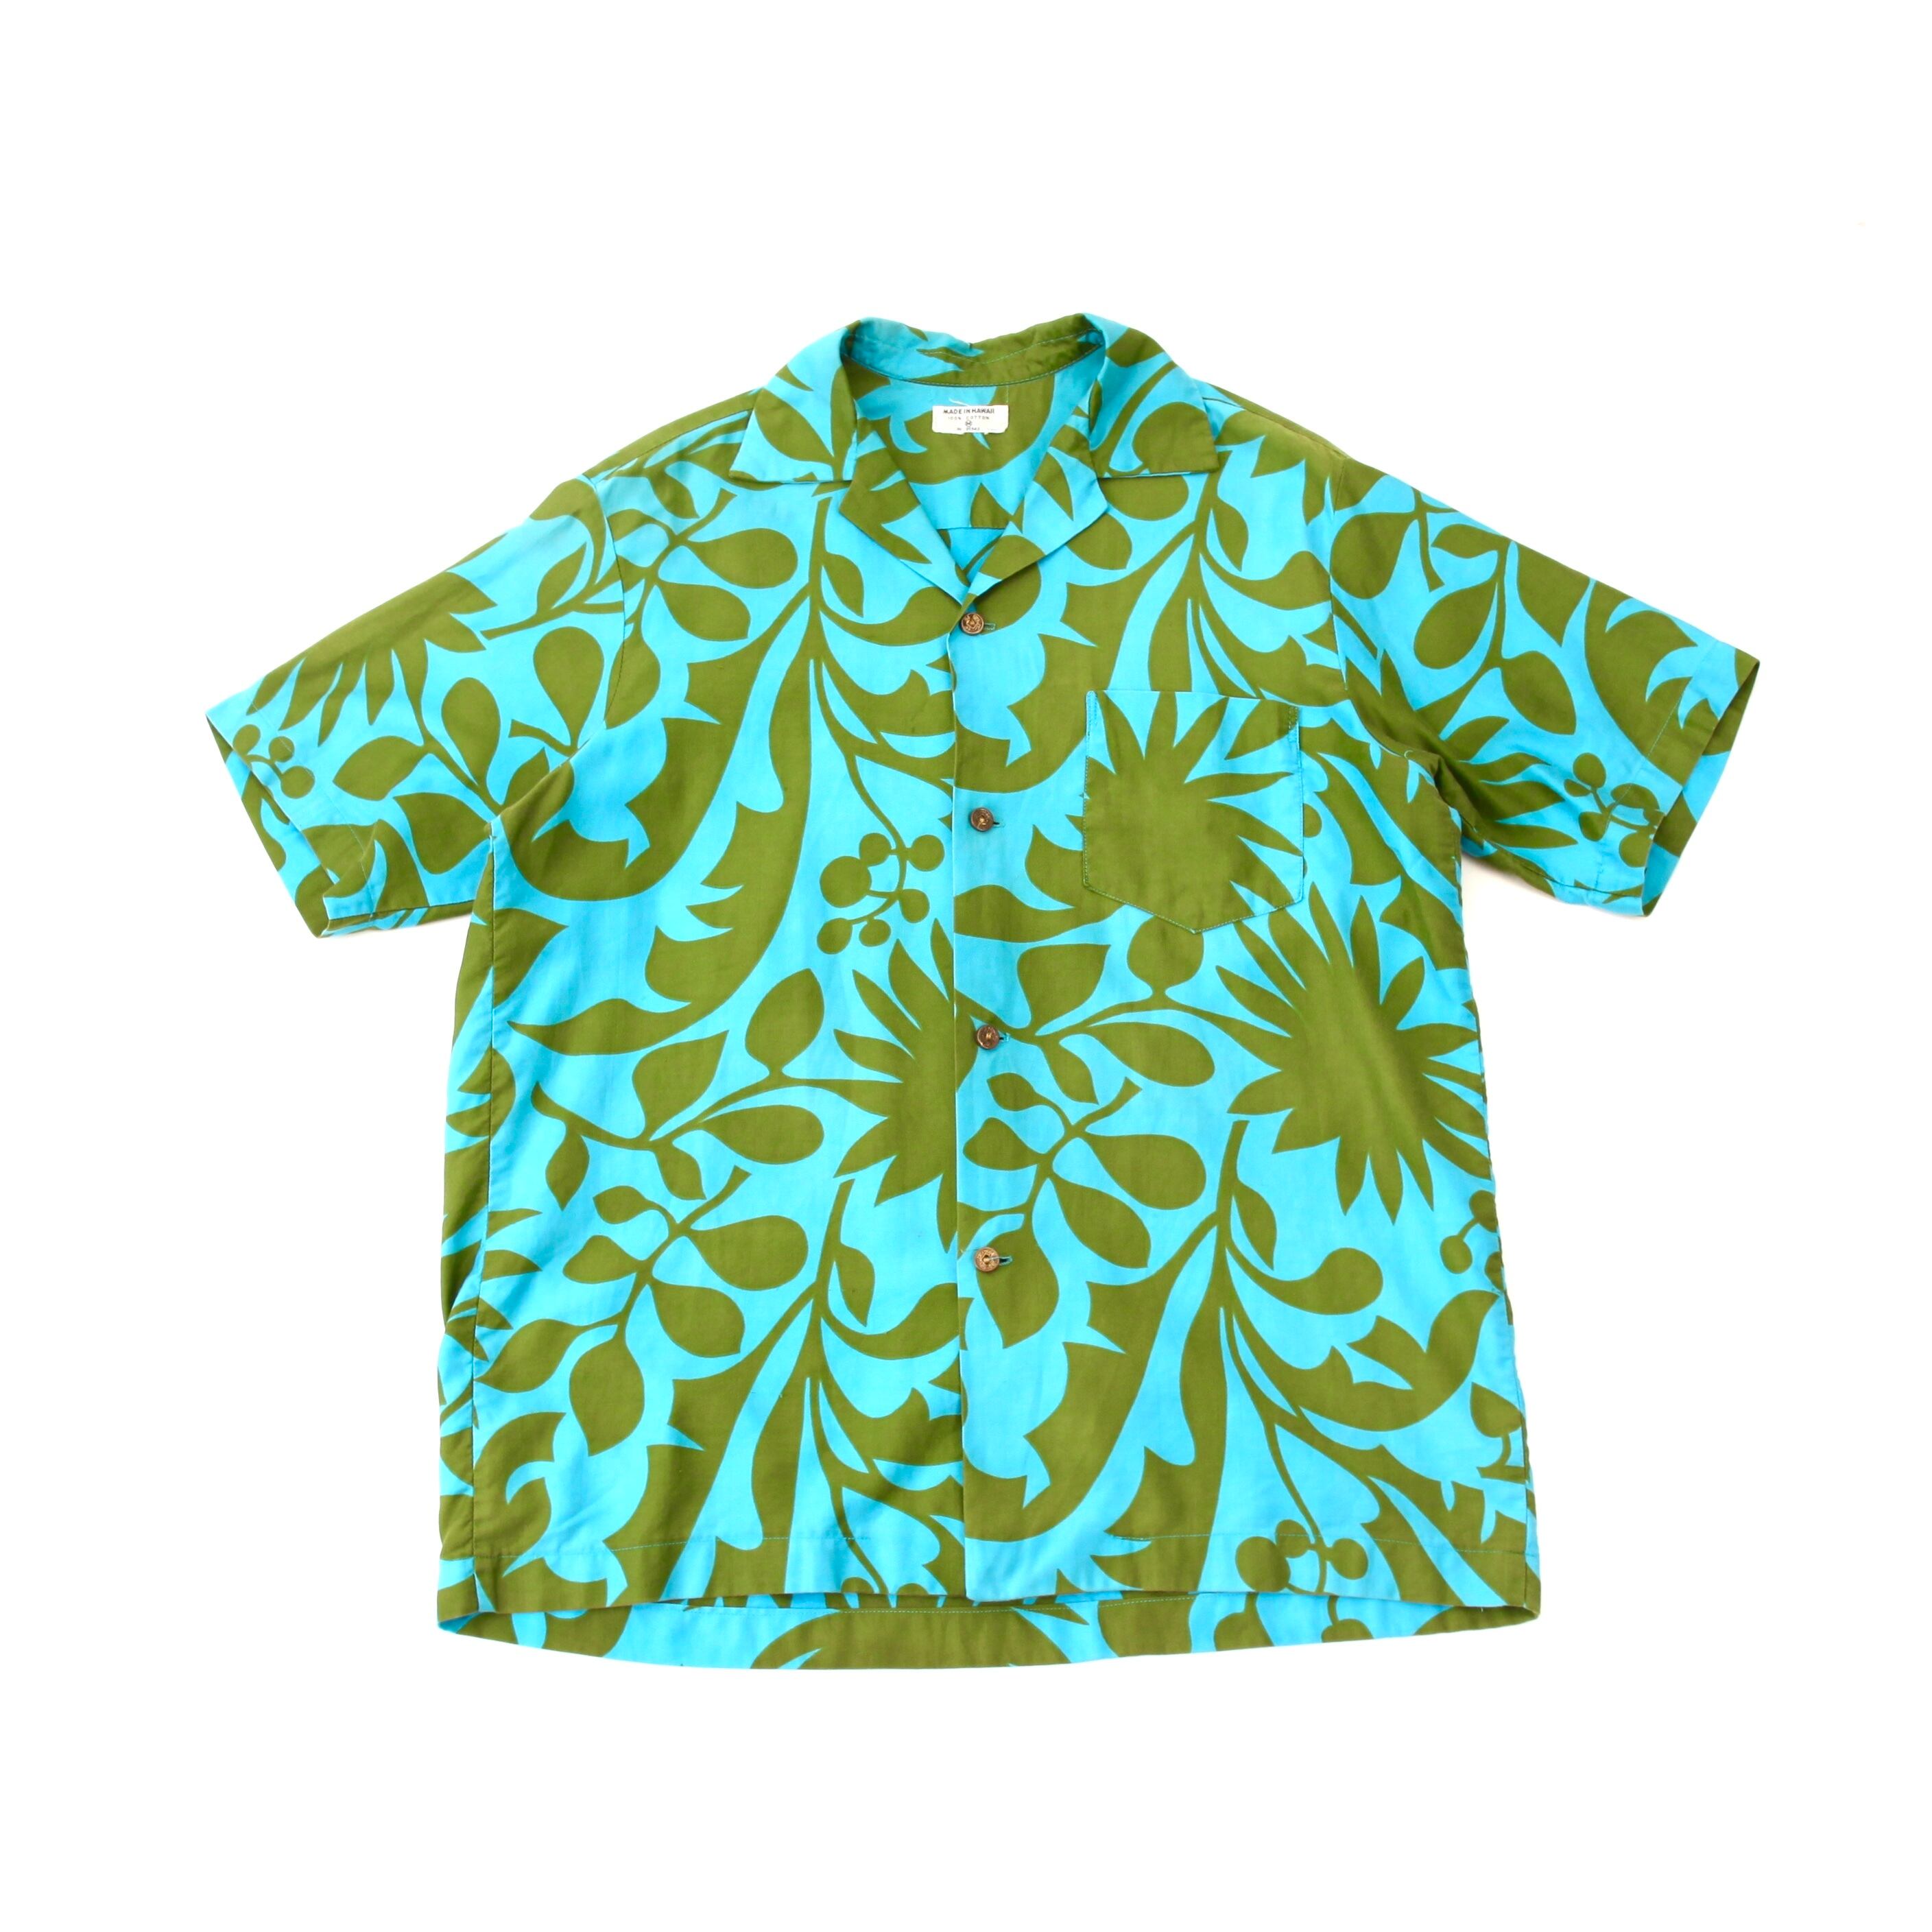 0578. 1960's cotton Hawaiian shirt 総柄 グリーン ブルー コットン